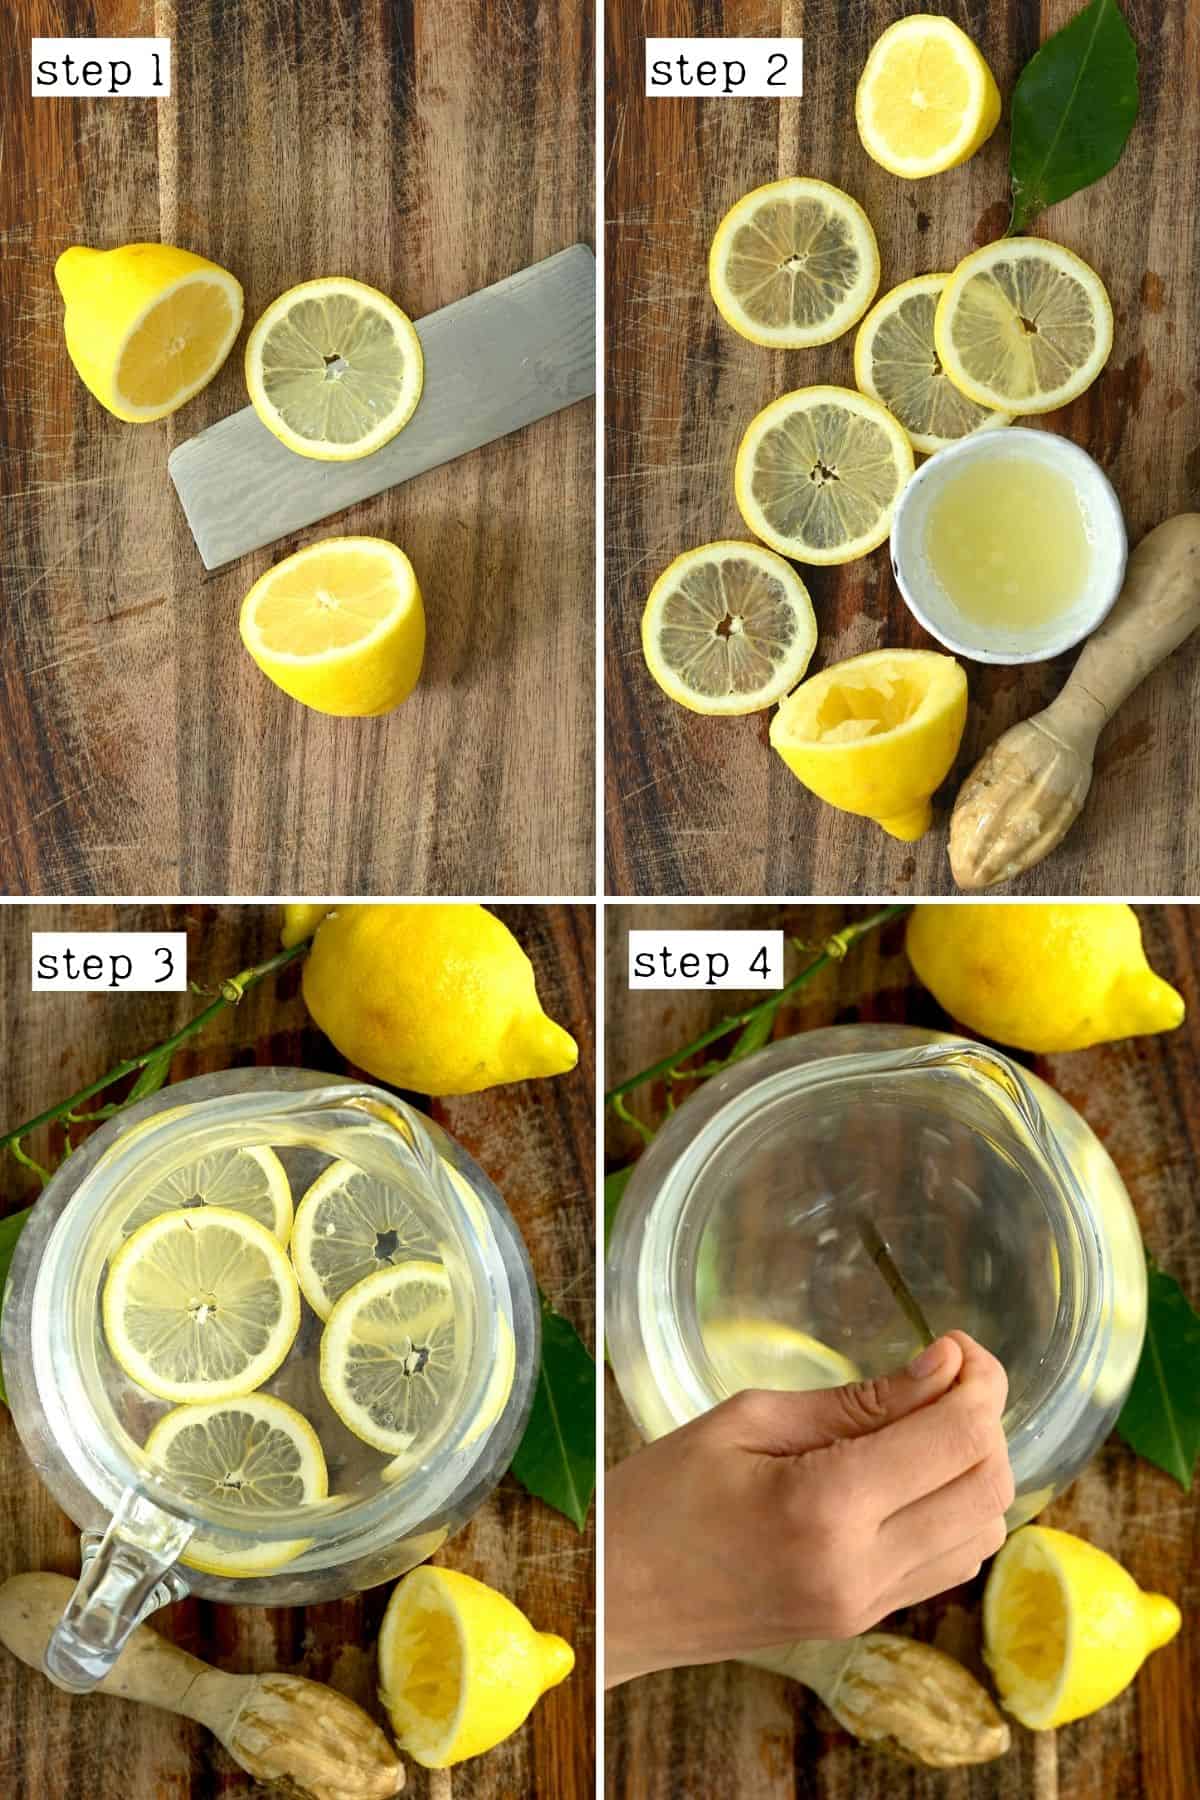 Steps for making lemon water